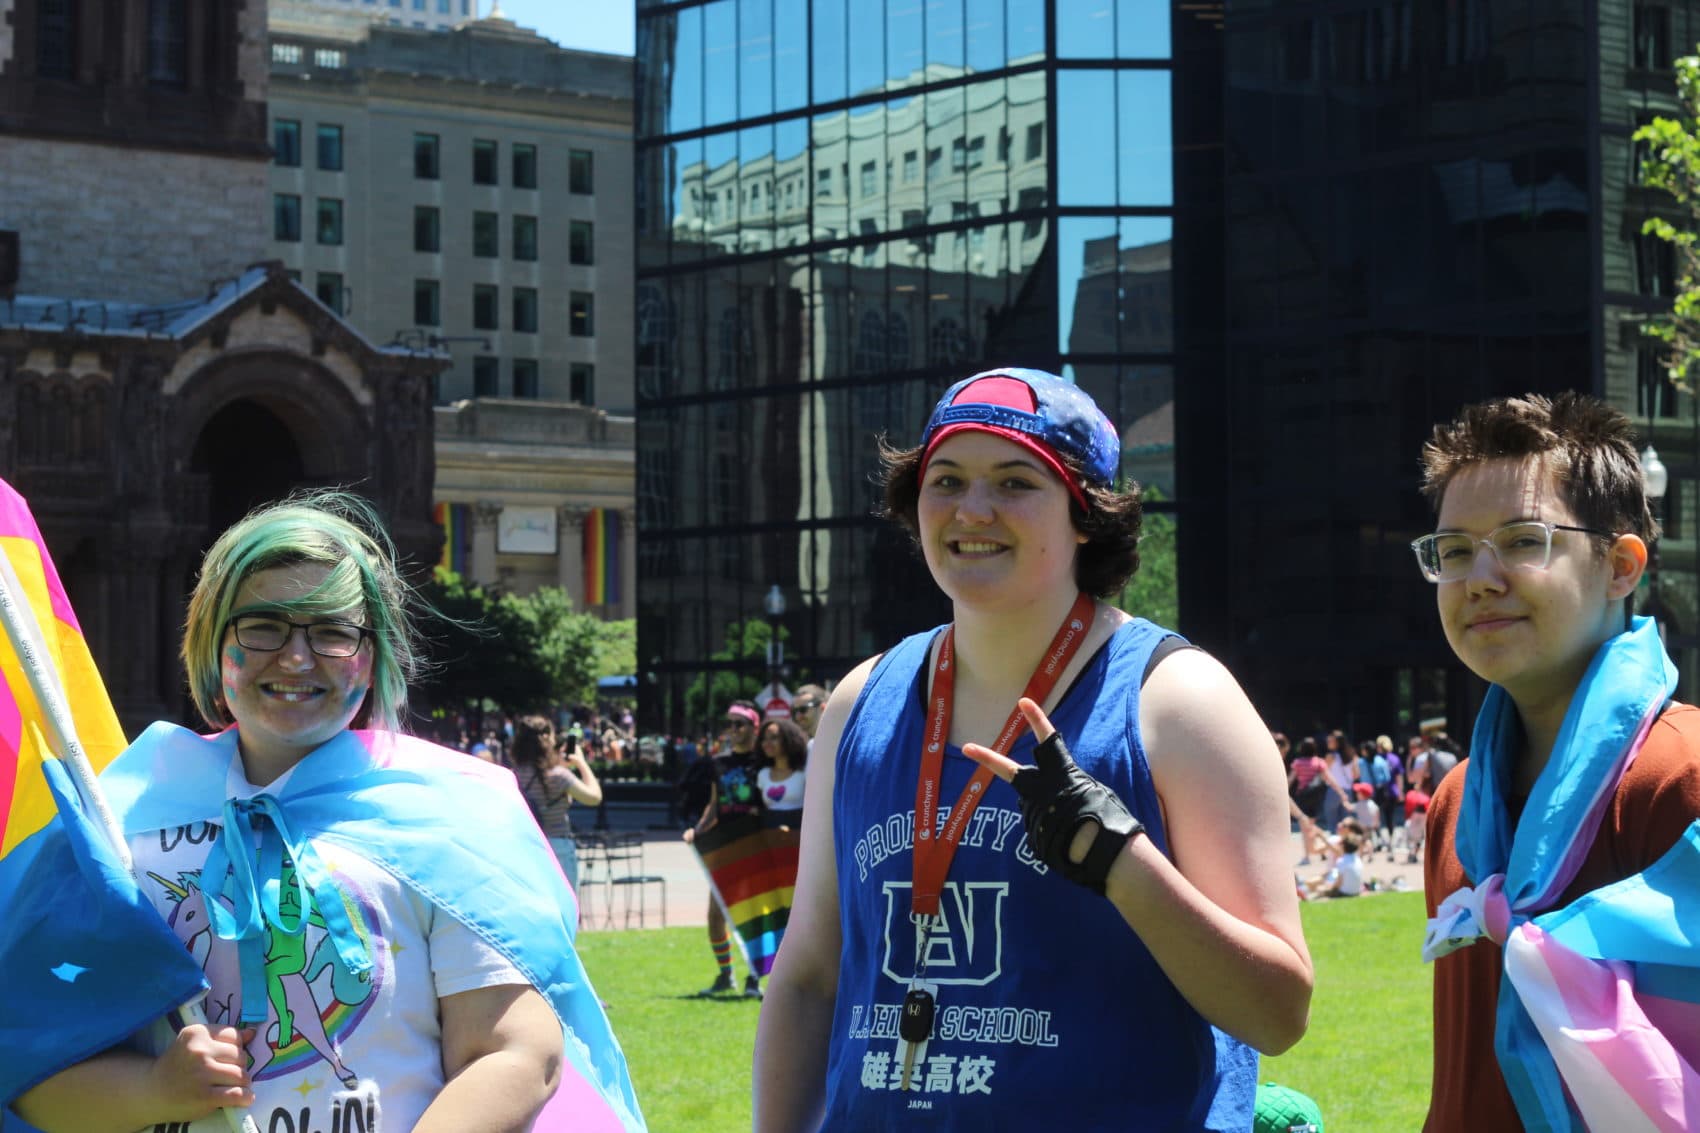 Boston Pride on X: #PrideFunFact In 2019 the Boston Pride parade